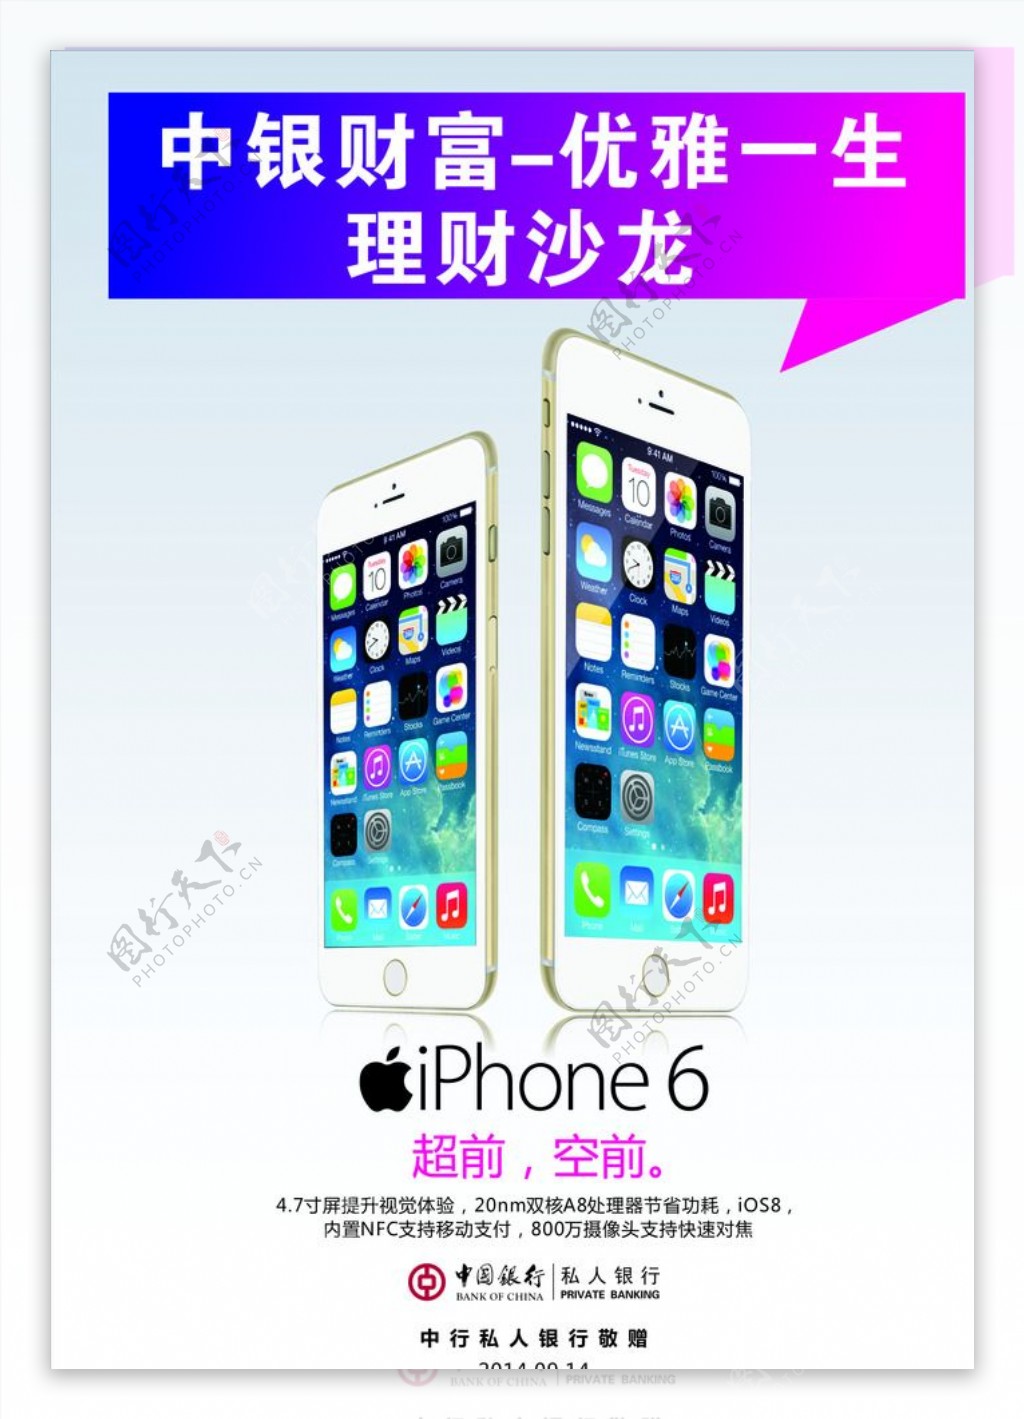 Iphone6苹果海报图片